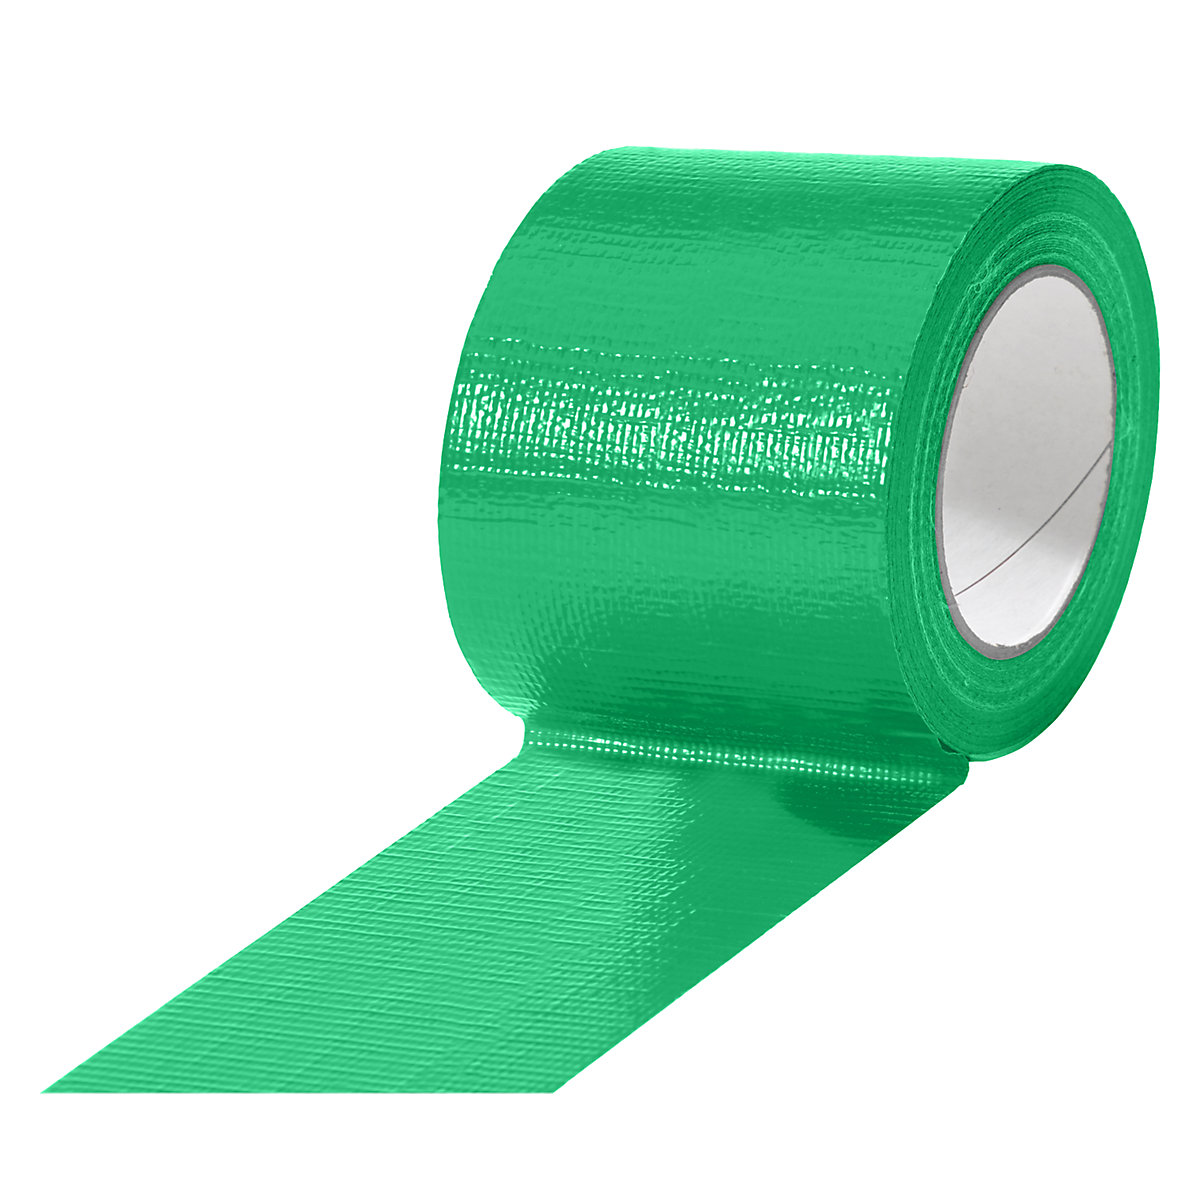 Cinta de tejido, en diferentes colores, UE 12 rollos, verde, anchura de cinta 75 mm-14